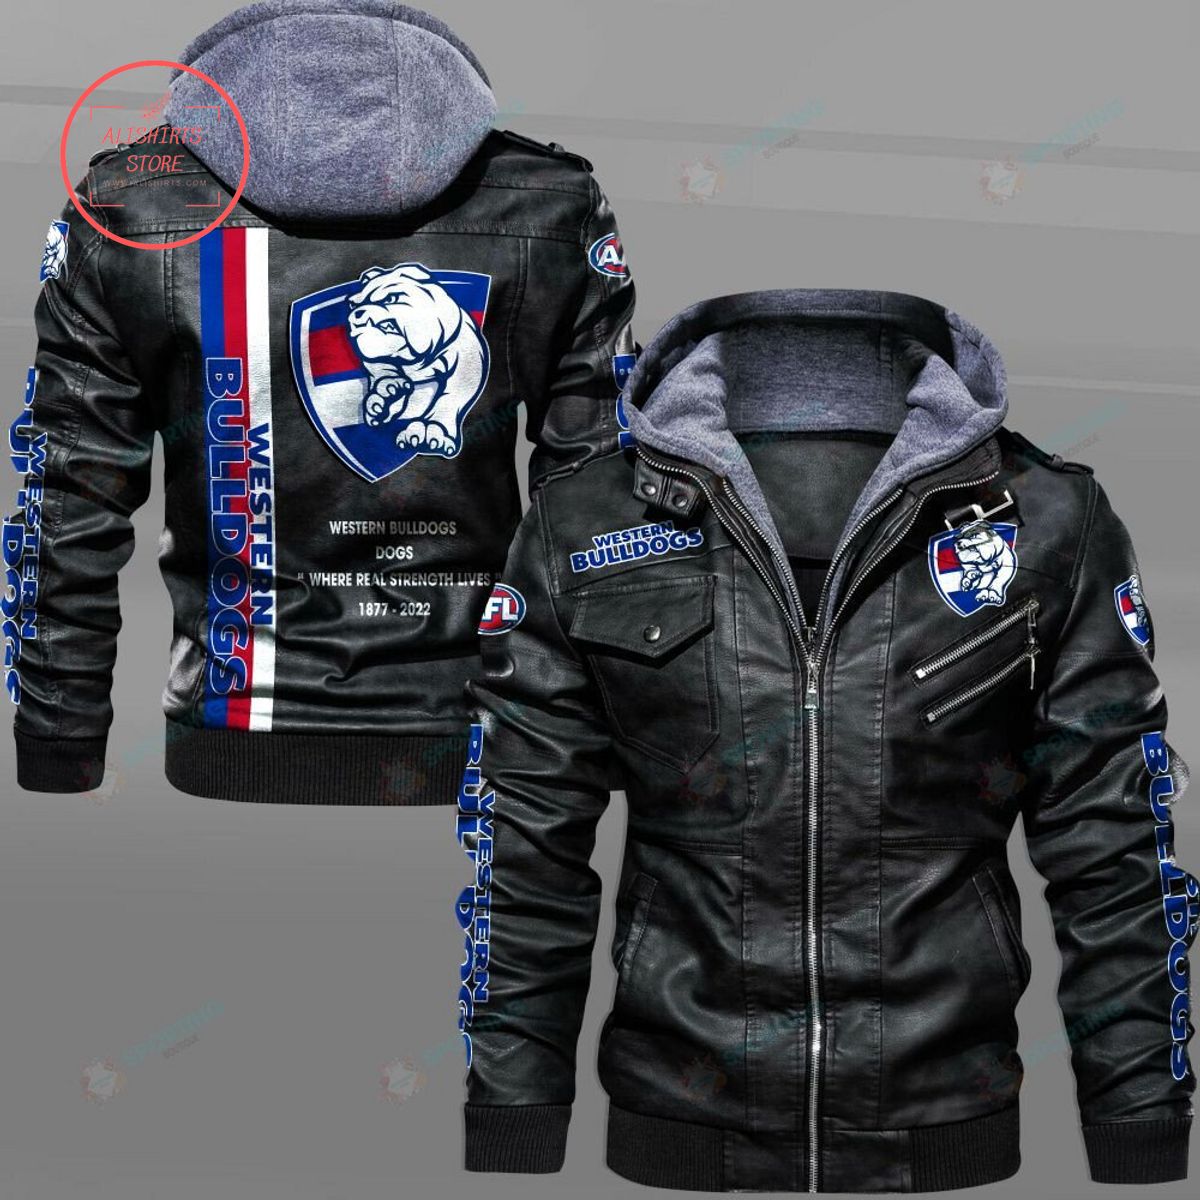 AFL Western Bulldogs Football Club Motto Leather Jacket Hooded Fleece For Fan